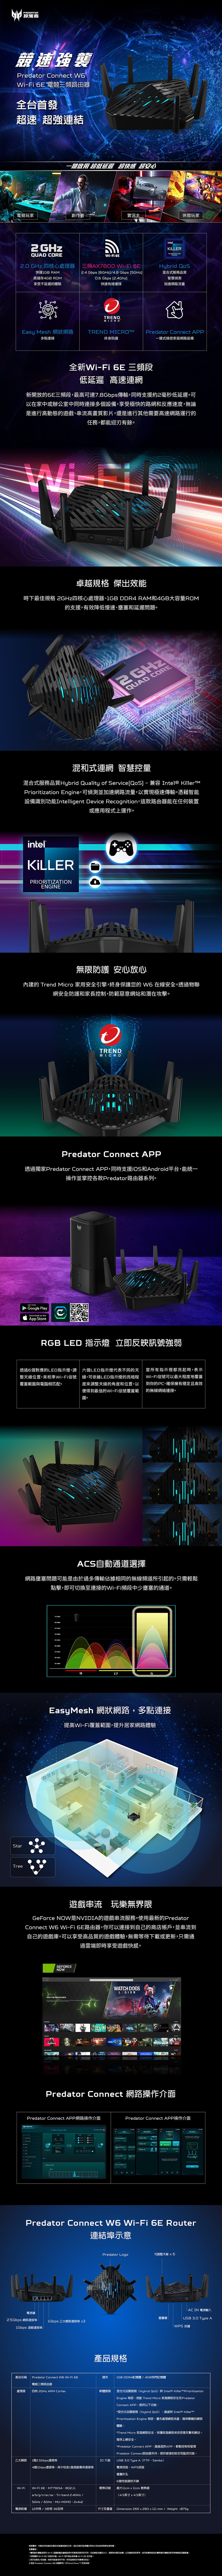 PREDATOR掠奪者競速強襲  i-Fi  電競三頻路由器全台首發超速 超強連結一鍵啟用 超低延遲 超快感 超安心電競玩家創作者實況主休閒玩家 GHzUAD CORE GHz 四核心處理器快速1GB RA高儲存4GB ROM享受不延遲的體驗intelWi-Fi 三頻AX7800 Wi-Fi 2.4 Gbps 6GHz/4.8 Gbps 5GHz0.6 Gbps (2.4Ghz快速有線連接Hybrid 混合式服務品質智慧偵測加速網路流量TRENDMICROEasy Mesh 網狀網路多點連接TREND MICROMPredator Connect APP終身防護一鍵式操控家庭網路設備全新Wi-Fi  三頻段低延遲 高速連網新開放的6E三頻段最高可達7.8Gbps傳輸同時支援約2毫秒低延遲可以在家中或辦公室中同時連接多個設備享受極快的路網反應速度無論是進行高動態的遊戲串流高畫質影片還是進行其他需要高速網路運行的任務,都能迎刃有餘卓越 傑出效能時下最佳規格 四核心處理器、1GB DDR4 RAM4GB大容量ROM的支援,有效降低慢速、壅塞和延遲問題2GHzQUAD CORE混和式連網 智慧控量混合式服務品質Hybrid Quality of Service(QoS) - 兼容Intel® KillerTMPrioritization Engine,可偵測並加速網路流量,以實現極速傳輸。憑藉智能設備識別功能Intelligent Device Recognition,這款路由器能在任何裝置或應用程式上運作。intelKILLERPRRITIZATIONENGINE無限防護 安心放心內建的 Trend Micro 家用安全引擎,終身保護您的  在線安全。透過物聯網安全防護和家長控制,防範惡意網站和潛在攻擊。0TRENDMICROPredator Connect APP透過獨家Predator Connect APP,同時支援iOS和Android平台,能統一操作並掌控各款Predator路由器系列。GET IT ONGoogle PlayDownload on theApp StoreRGB LED 指示燈 立即反映訊號強弱透過6個對應的LED指示燈,調 六個LED指示燈代表不同的天整天線位置,來校準Wi-Fi信號線,可依據LED指示燈的亮暗程覆範圍與電腦相匹配。度來調整天線的角度和位置,以便得到最佳的Wi-Fi信號覆蓋範圍。當所有指示燈都亮起時,表示Wi-Fi信號可以最大程度地覆蓋到你的PC,確保擁有穩定且高效的網絡連接。StarTreeACS自動通道選擇網路壅塞問題可能是由過多傳輸佔據相同的無線頻道所引起的。只需輕鬆點擊,即可切換至連接的Wi-Fi頻段中少壅塞的通道。     17EasyMesh 網狀網路,多點連接提高Wi-Fi覆蓋範圍,提升居家網路體驗遊戲串流 玩樂無界限GeForce NOW是NVIDIA的遊戲串流服務。使用最新的PredatorConnect W6 Wi-Fi6E路由器,你可以連接到自己的商店帳戶,並串流到自己的遊戲庫。可以享受高品質的遊戲體驗,無需等待下載或更新,只需通過雲端即時享受遊戲快感。GEFORCENOWWATCH DOGSLEGIONJOIN THE RESISTANCERIDEMPredator Connect 網路操作介面Predator Connect APP網路操作介面Predator Connect APP操作介面  Predator Connect WQPredator Connect W6 Wi-Fi 6E Router連結埠示意電源鍵2.5Gbps 網路連接埠1Gbps 遊戲連接埠Predator Logo可調整天線 AC IN 電源輸入USB 3.0 Type A重置鍵1Gbps 乙太網路連接埠 3WPS 按鍵產品名稱Predator Connect W6 Wi-Fi 6E電競三頻路由器處理器 四核 2GHz ARM Corte乙太網路1個2.5Gbps連接埠4個1Gbps連接埠,其中包含1個遊戲專用連接埠產品規格儲存1GB DDR4記憶體/4GB快閃記憶體軟體服務 混合式品質服務(Hybrid QoS)與Intel® KillertPrioritizationEngine 相容, Trend Micro 家庭網路安全及PredatorConnect APP,提供以下功能:*混合式品質服務(Hybrid QoS):通過與 Intel® Prioritization Engine 相容,優先處理網路流量,確保順暢的網路體驗。*Trend Micro 家庭網路安全:保護家庭網路免受惡意攻擊和網站,確保上網安全。*Predator Connect APP:通過這款APP,輕鬆控制和管理Predator Connect路由器系列,提供便捷的設定和監控功能。USB 3.0 Type A(FTP、Samba)IO 介面電源按鈕、WPS按鈕Wi-FiWi-Fi 6E、MT7915A、802.11a/b/g/n/ac/a、Tri-band 2.4GHz/5GHz/6GHz、MU-、電源設備 12伏特/3安培 36瓦特重置針孔6個性能調校天線散熱功能 超大11cm  11cm 散熱器尺寸及重量(4.5英寸 x 4.5英寸)Dimension 265 x 260 x 111 mm/Weight 875g商標聲明:本網站所到的產品名稱僅做識別之用,這些名稱可能是於其他公司的註冊商標版權,免責聲明:*實際資料傳輸和 Wi-Fi 蓋範圍依據網路條件和環境因素而有不同,包括網路流量的大小、建築物材質及結構,以及網路使用等,皆可能導致的實際資料傳輸和無線網路蓋範圍。*若要獲得 Wi-Fi 6E 功能的好處,Wi-Fi 用1.視乎型號及/或,規格可能會有所不同Wi-Fi 6E 的功能。戶端必須具。所有型號視乎供應情況而定。2. Predator Connect  享有一次Trend Micro ™ 終身保障。